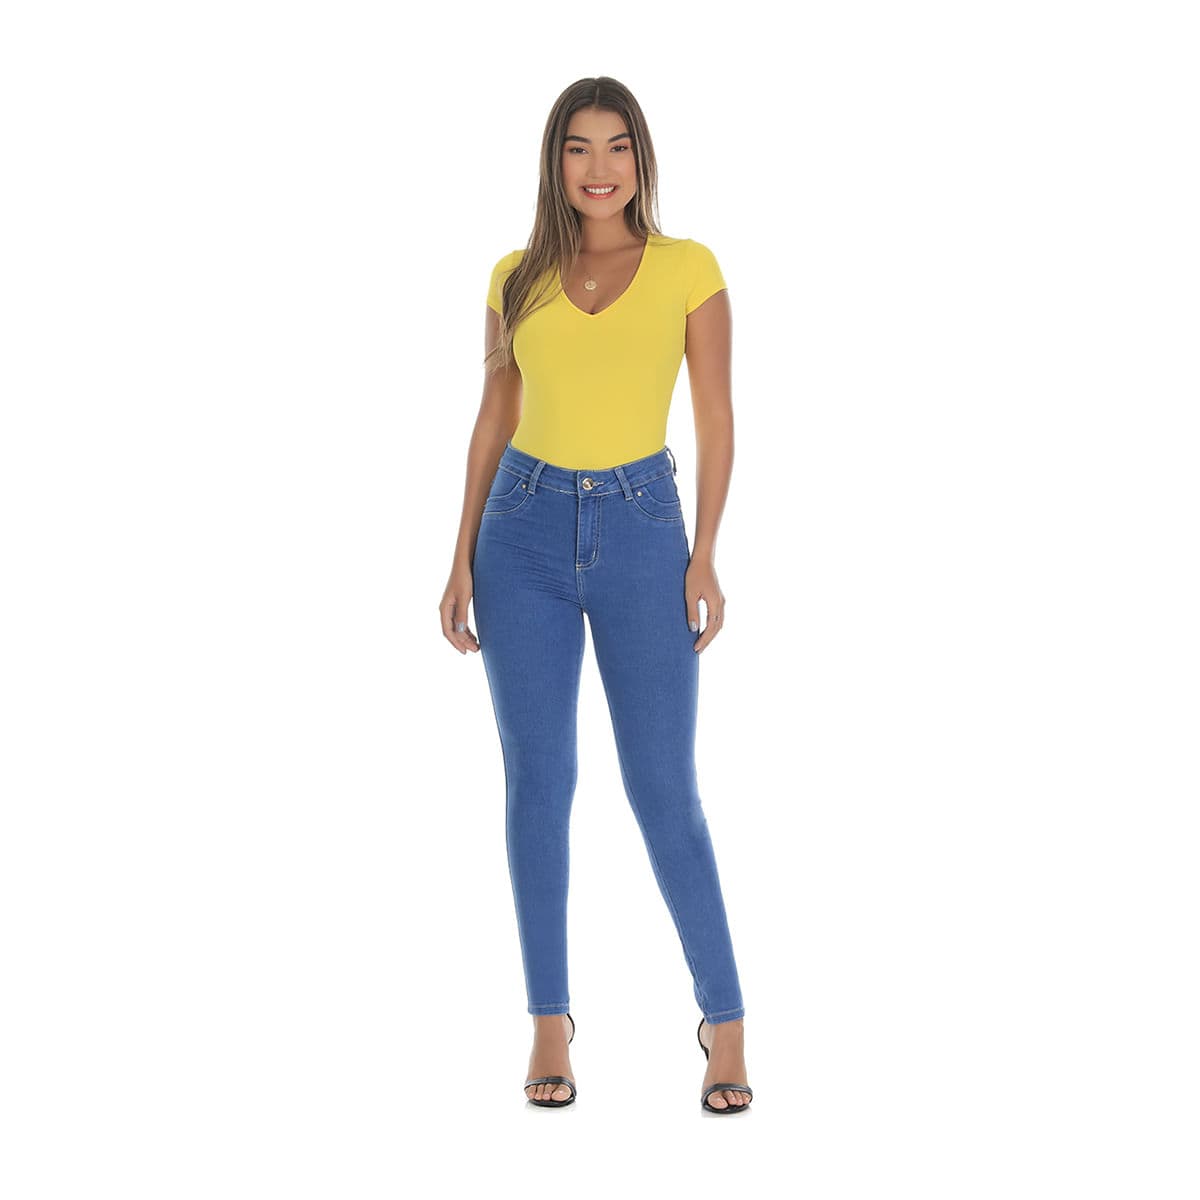 Kit 2 Calças Jeans Levanta Bumbum Feminina 40 Sawary - Carrefour - Carrefour